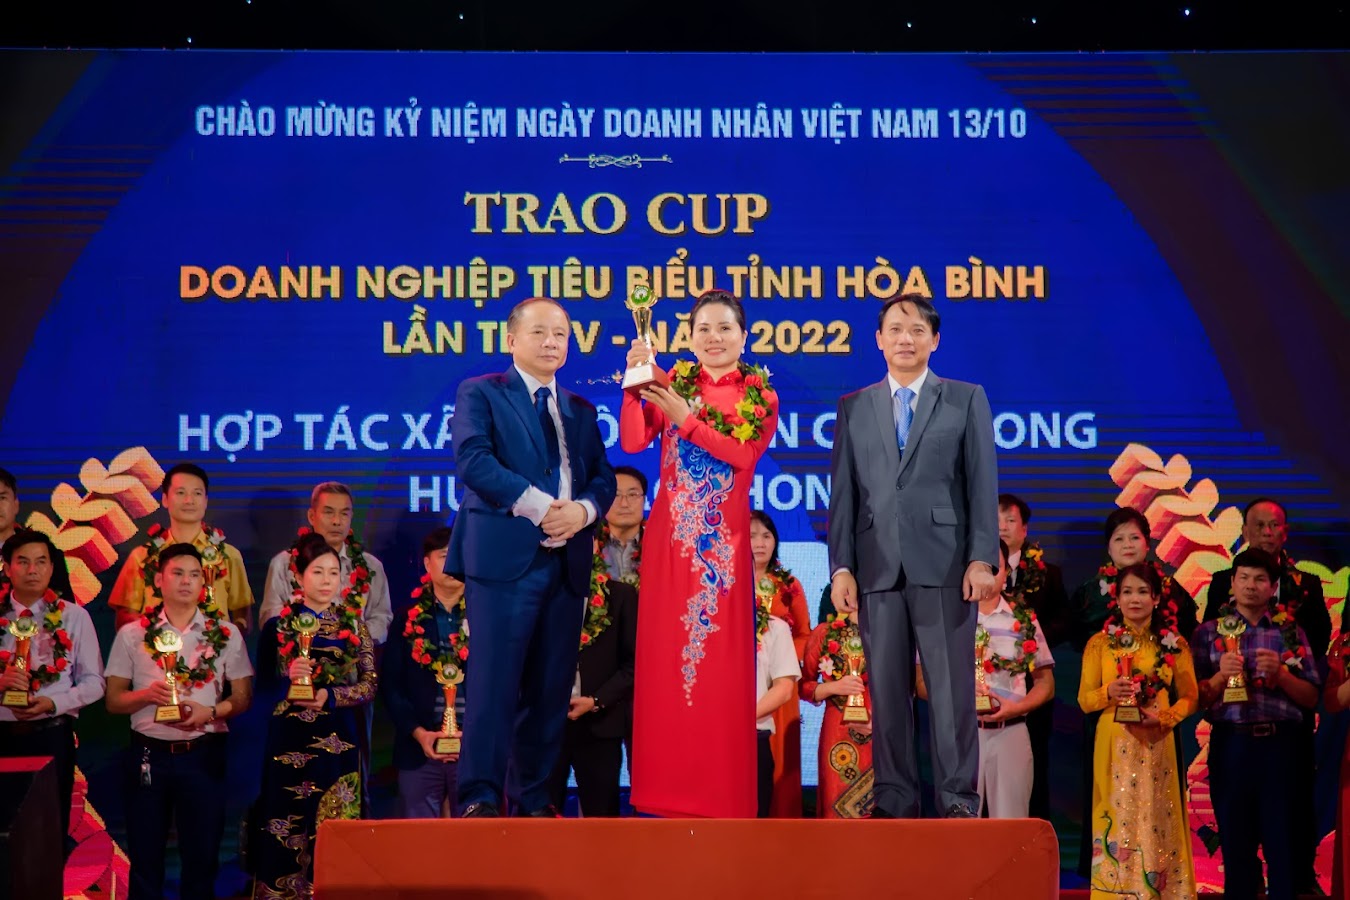 HTX 3T nông sản Cao Phong vinh dự đón nhận Cúp vinh danh doanh nghiệp tiêu biểu tỉnh Hòa Bình lần thứ V năm 2022